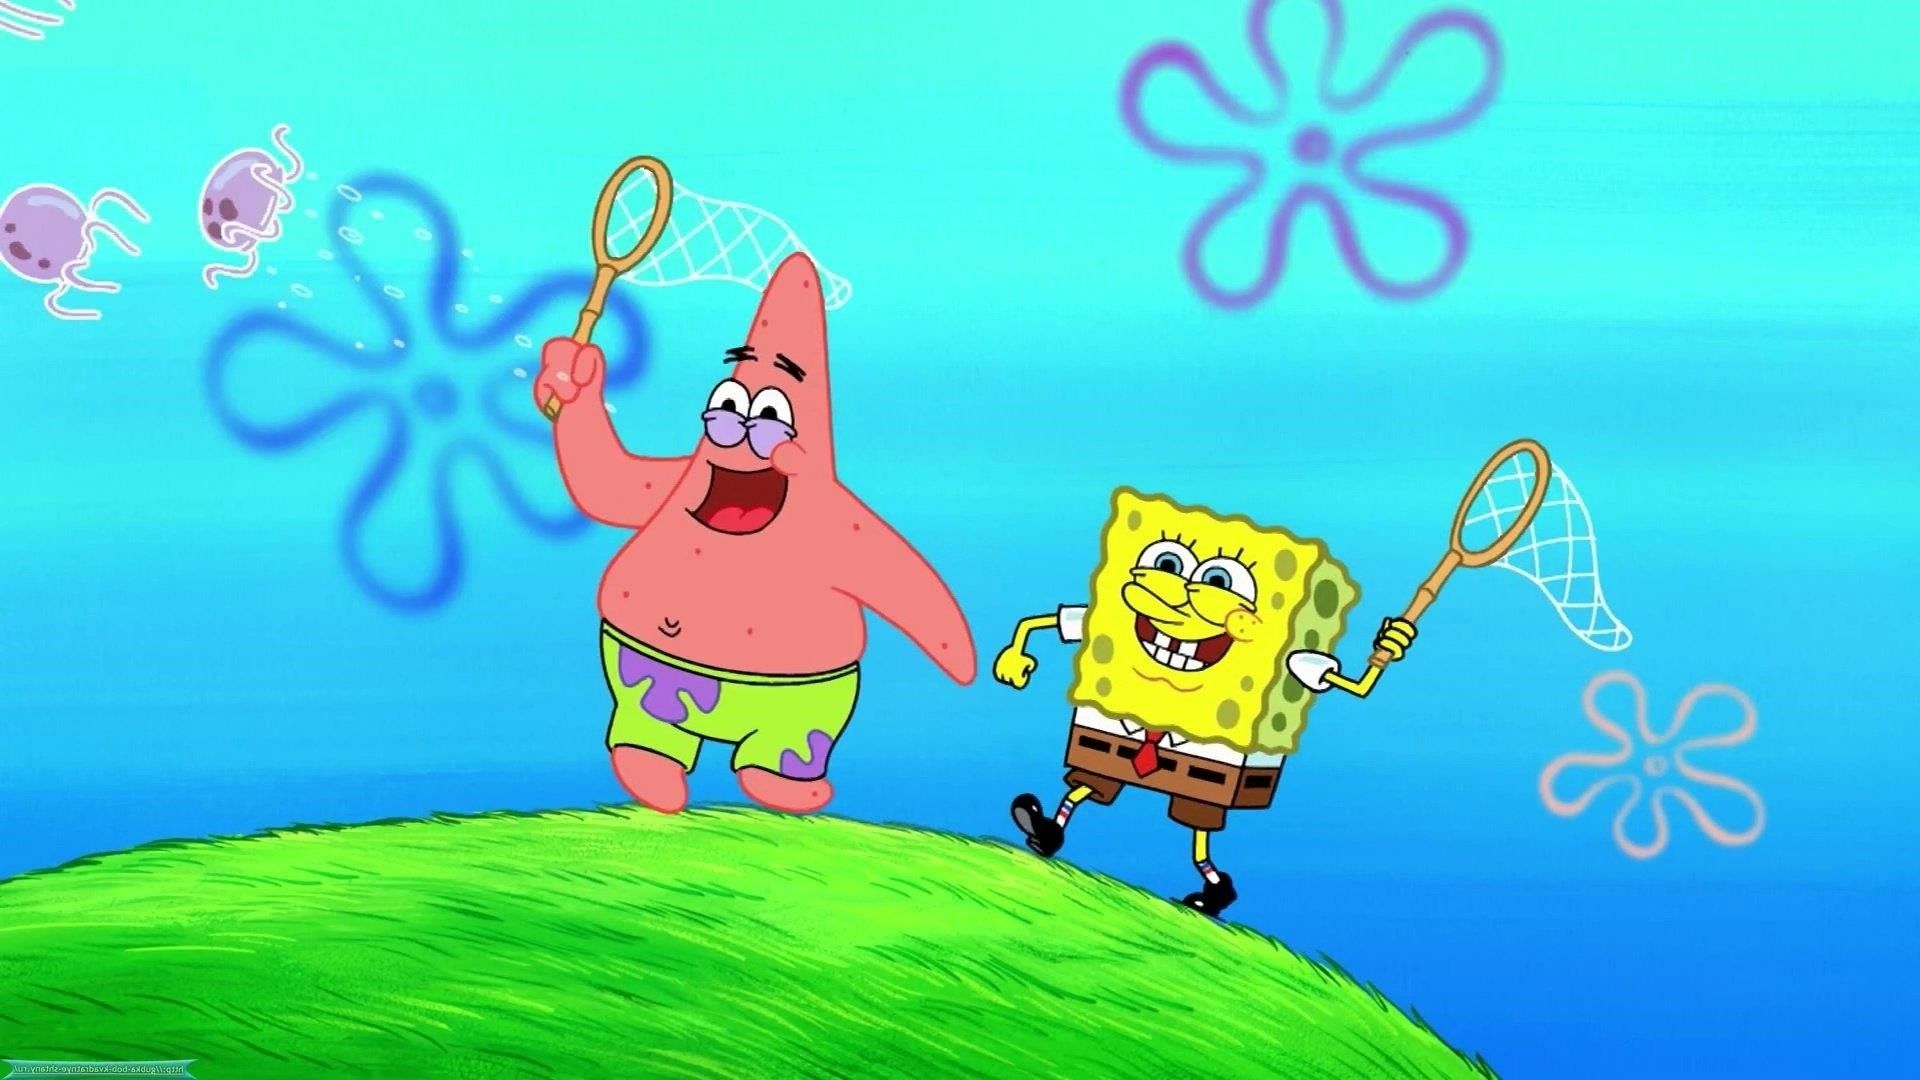 Spongebob and Patrick Wallpaper: Image